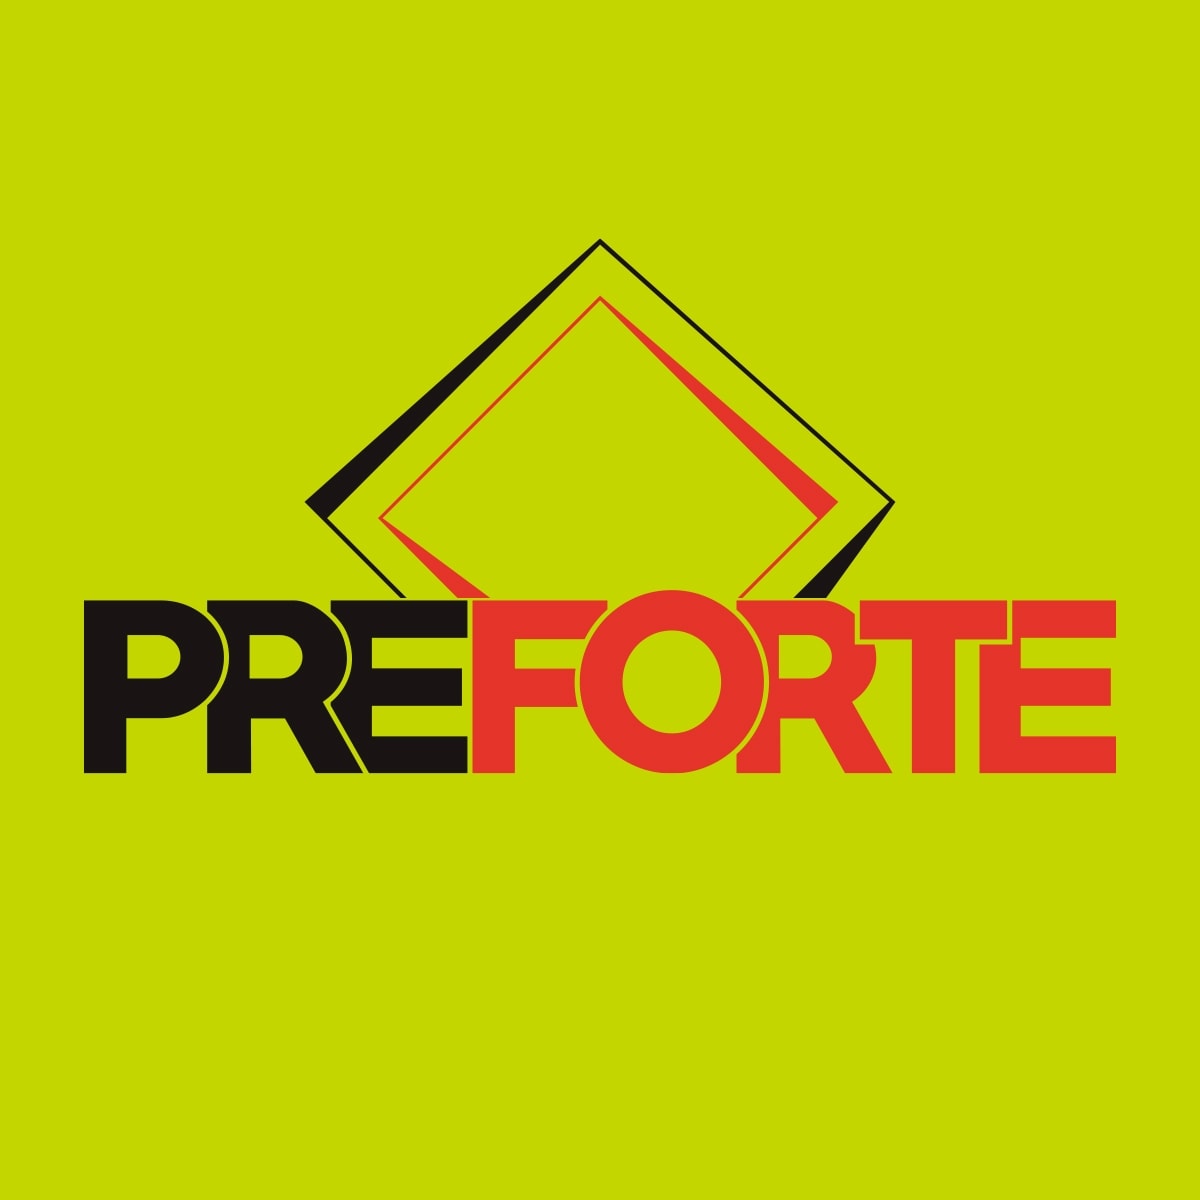 PREFORTE logo